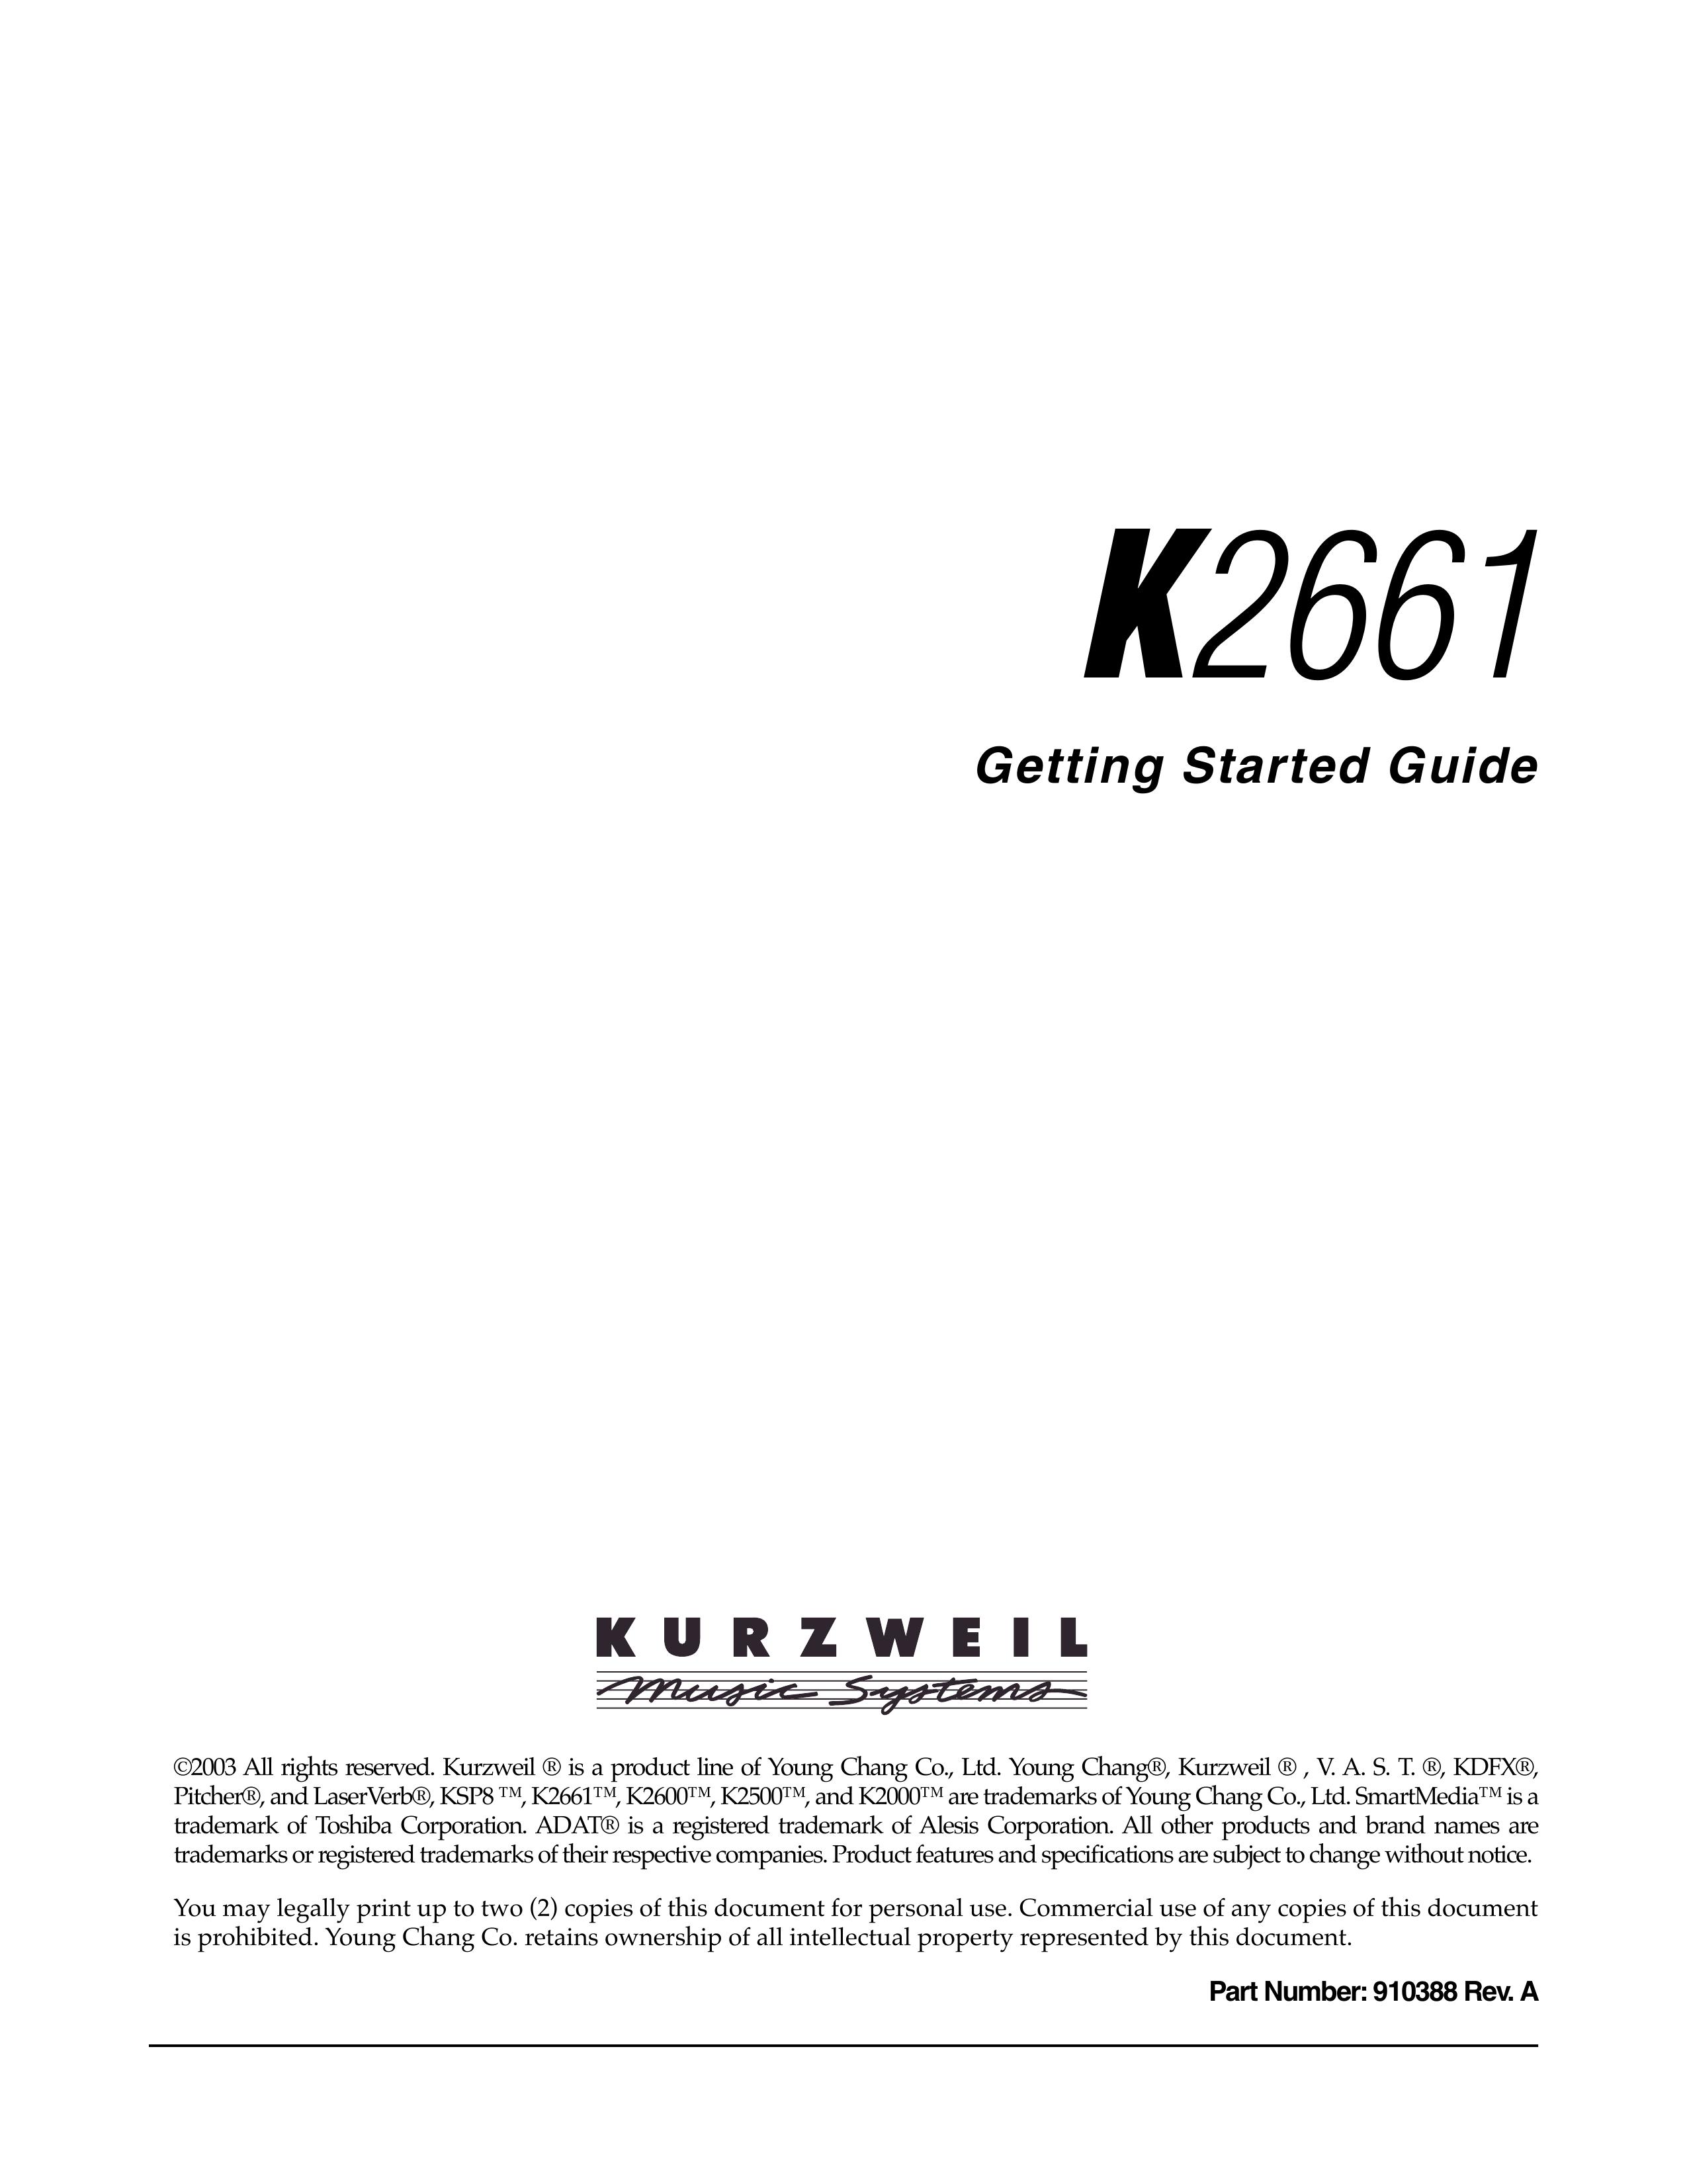 Alesis K2661 Musical Instrument User Manual